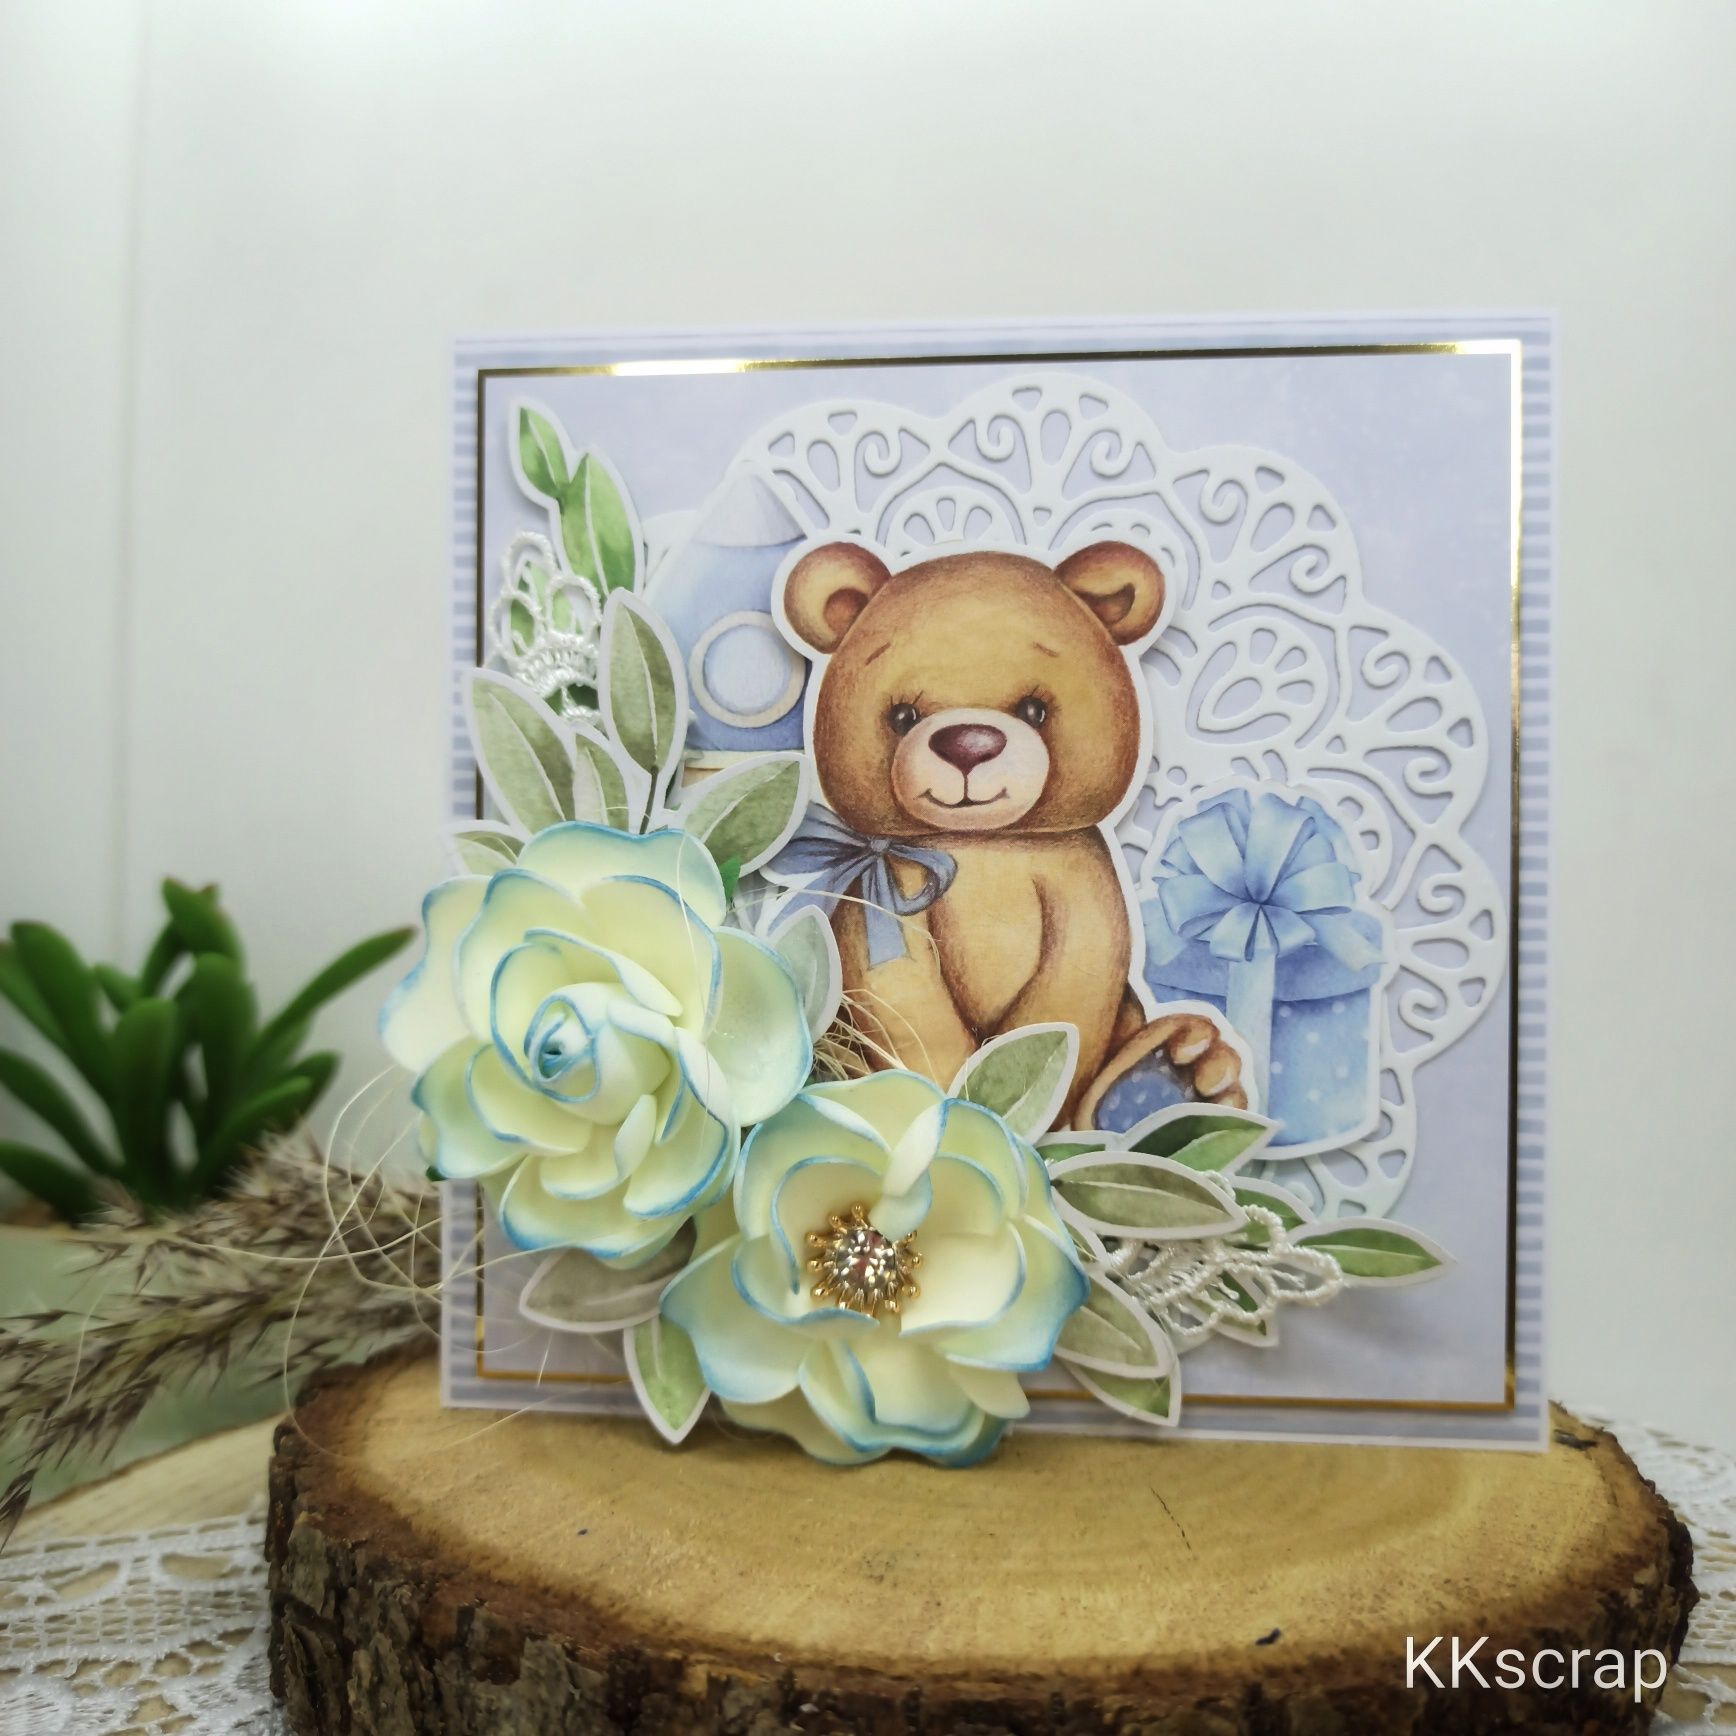 Kartka na chrzest roczek urodziny ślub komunię personalizowana KKscrap